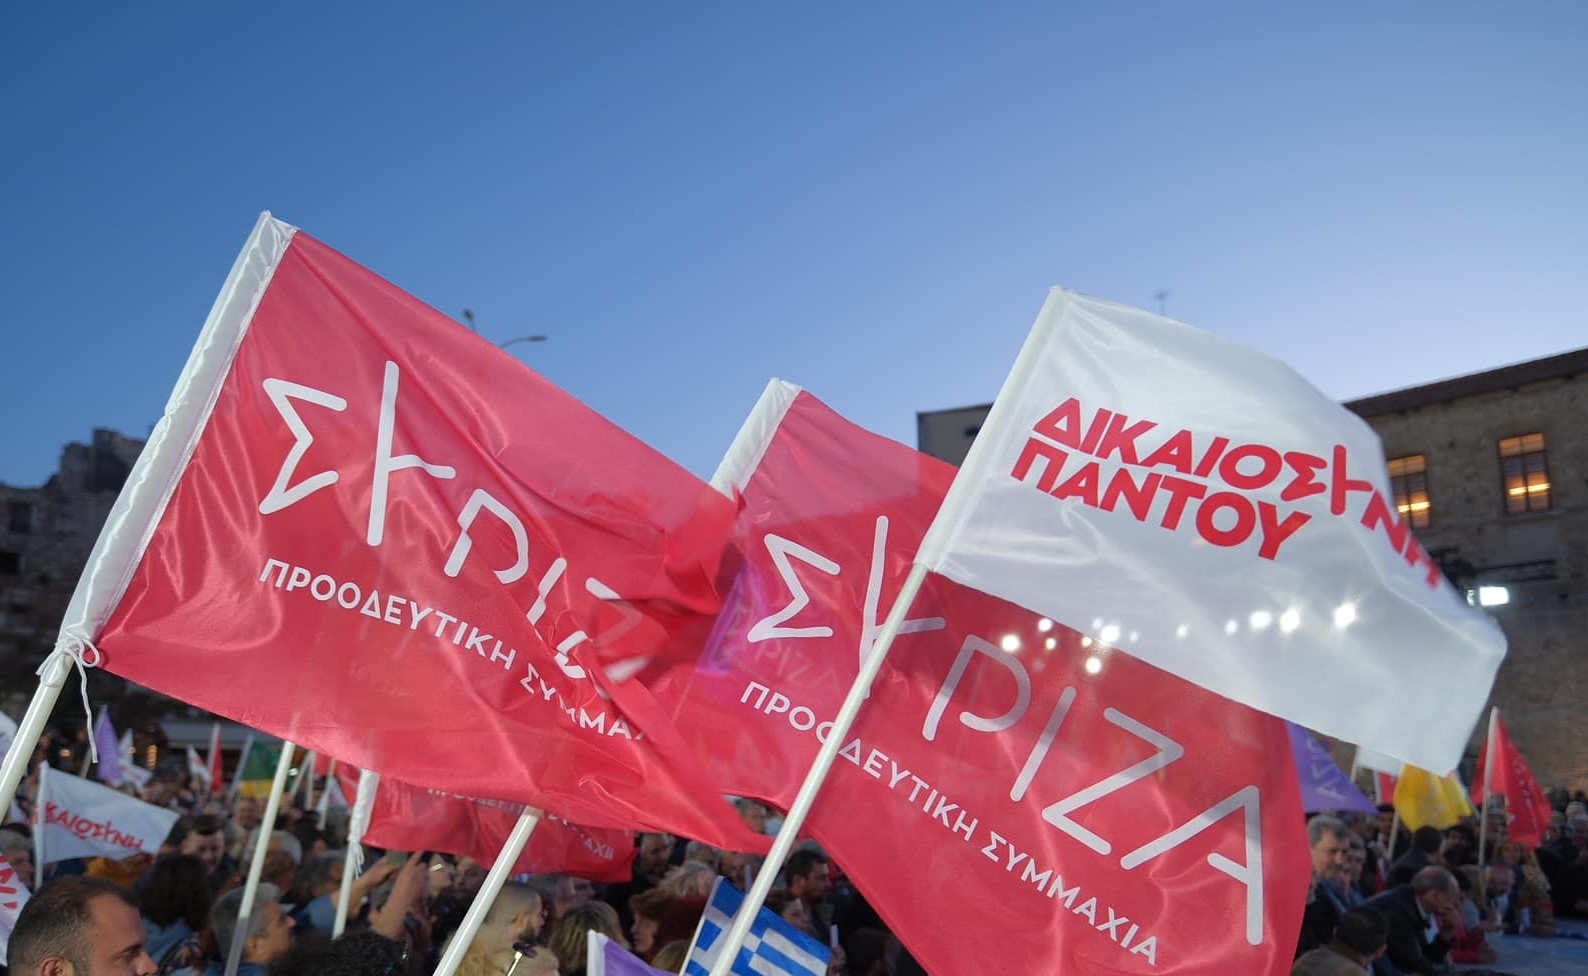 Μπάτζιος: Ήττα σοκ για τον ΣΥΡΙΖΑ στα Τρίκαλα - Κινδυνεύουμε να χάσουμε την έδρα